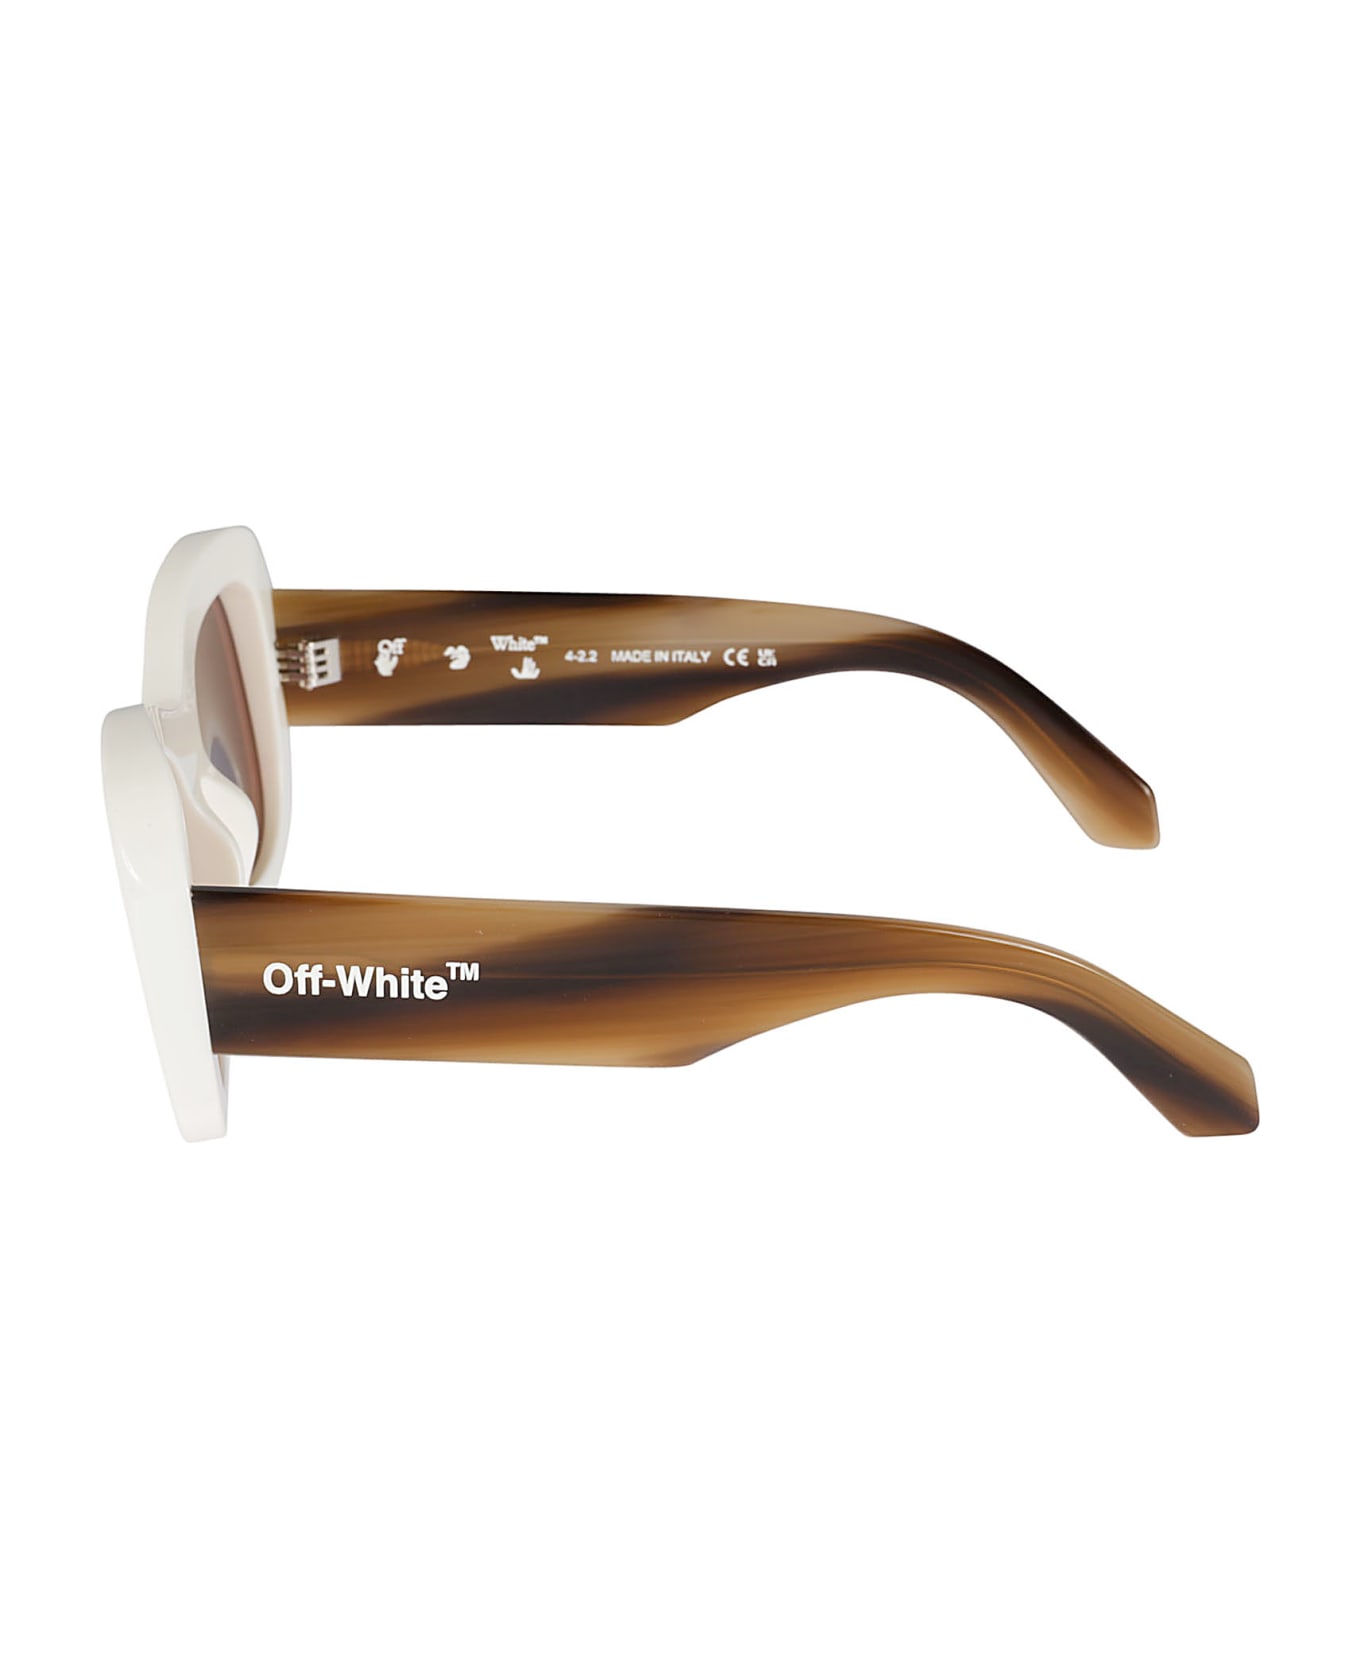 Off-White Pablo Sunglasses - White